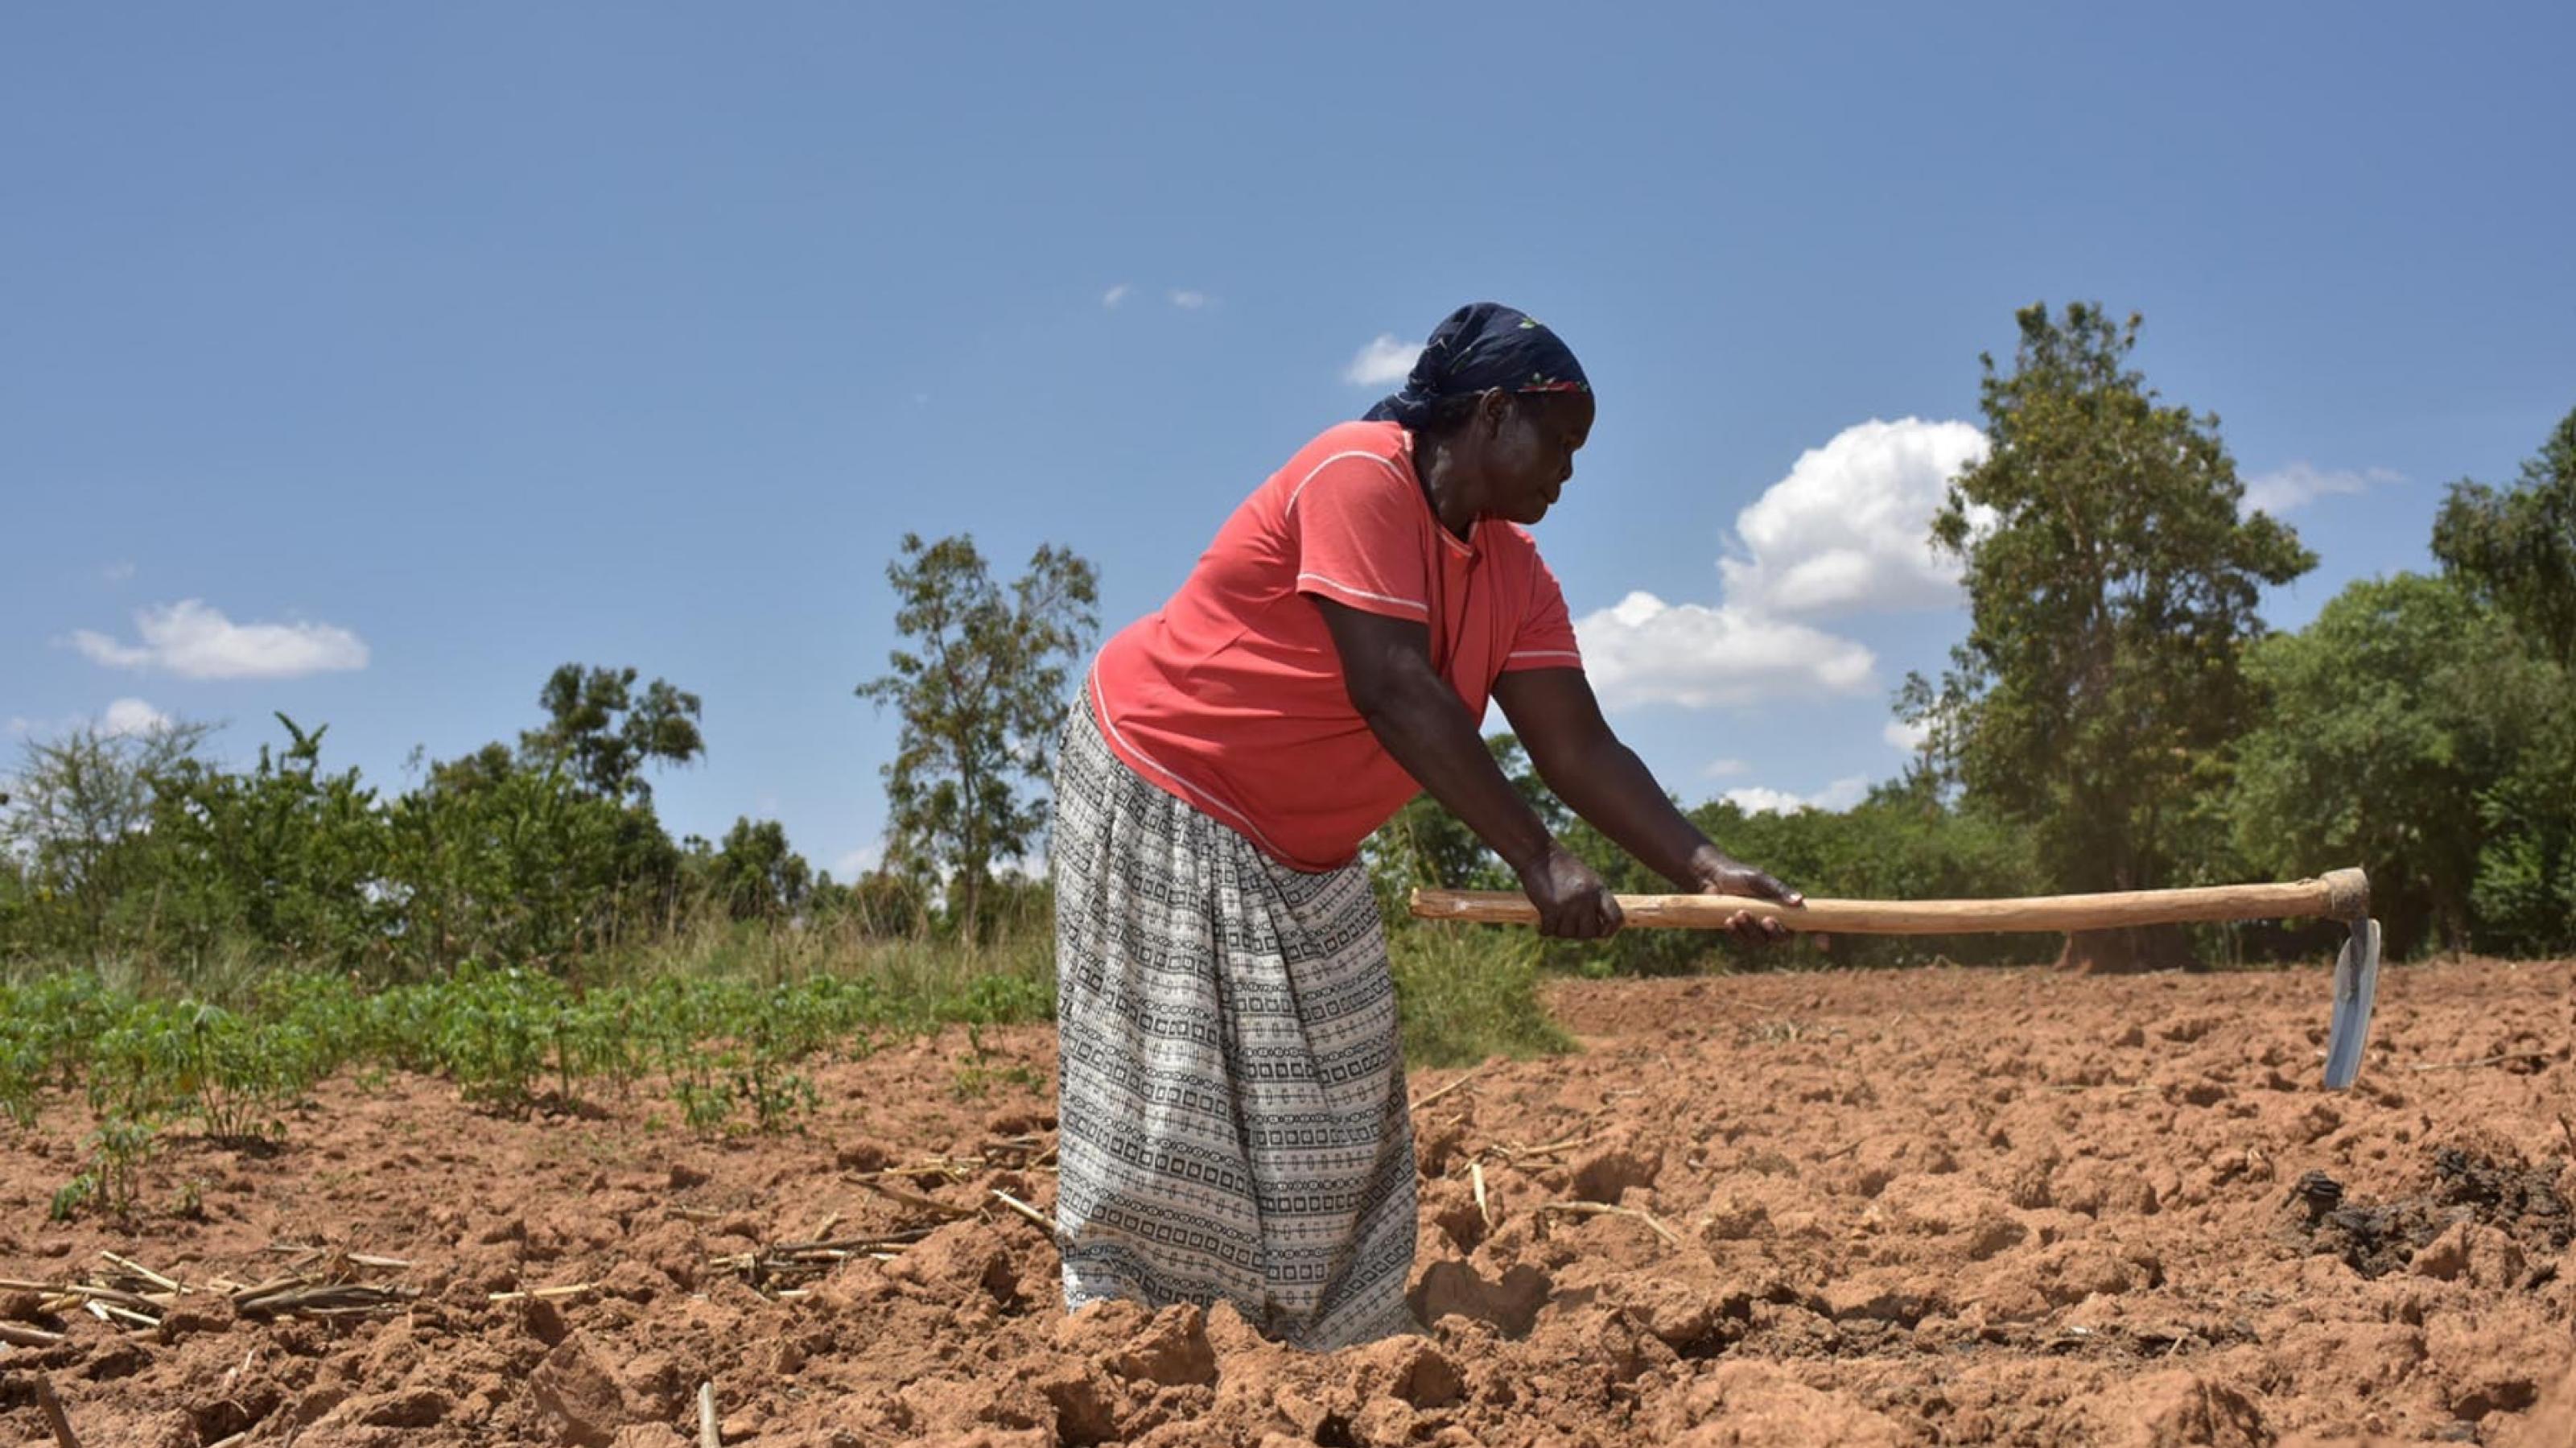 Eine etwa 50-jahre alte Bäuerin in Kenia bearbeitet ihren Acker mit einer Hacke. der Boden ist braun und trocken.Sie trägt ein Kopftuch, ein rotes kurzärmeliges T-Shirt und einen grau gestreiften langen Rock.